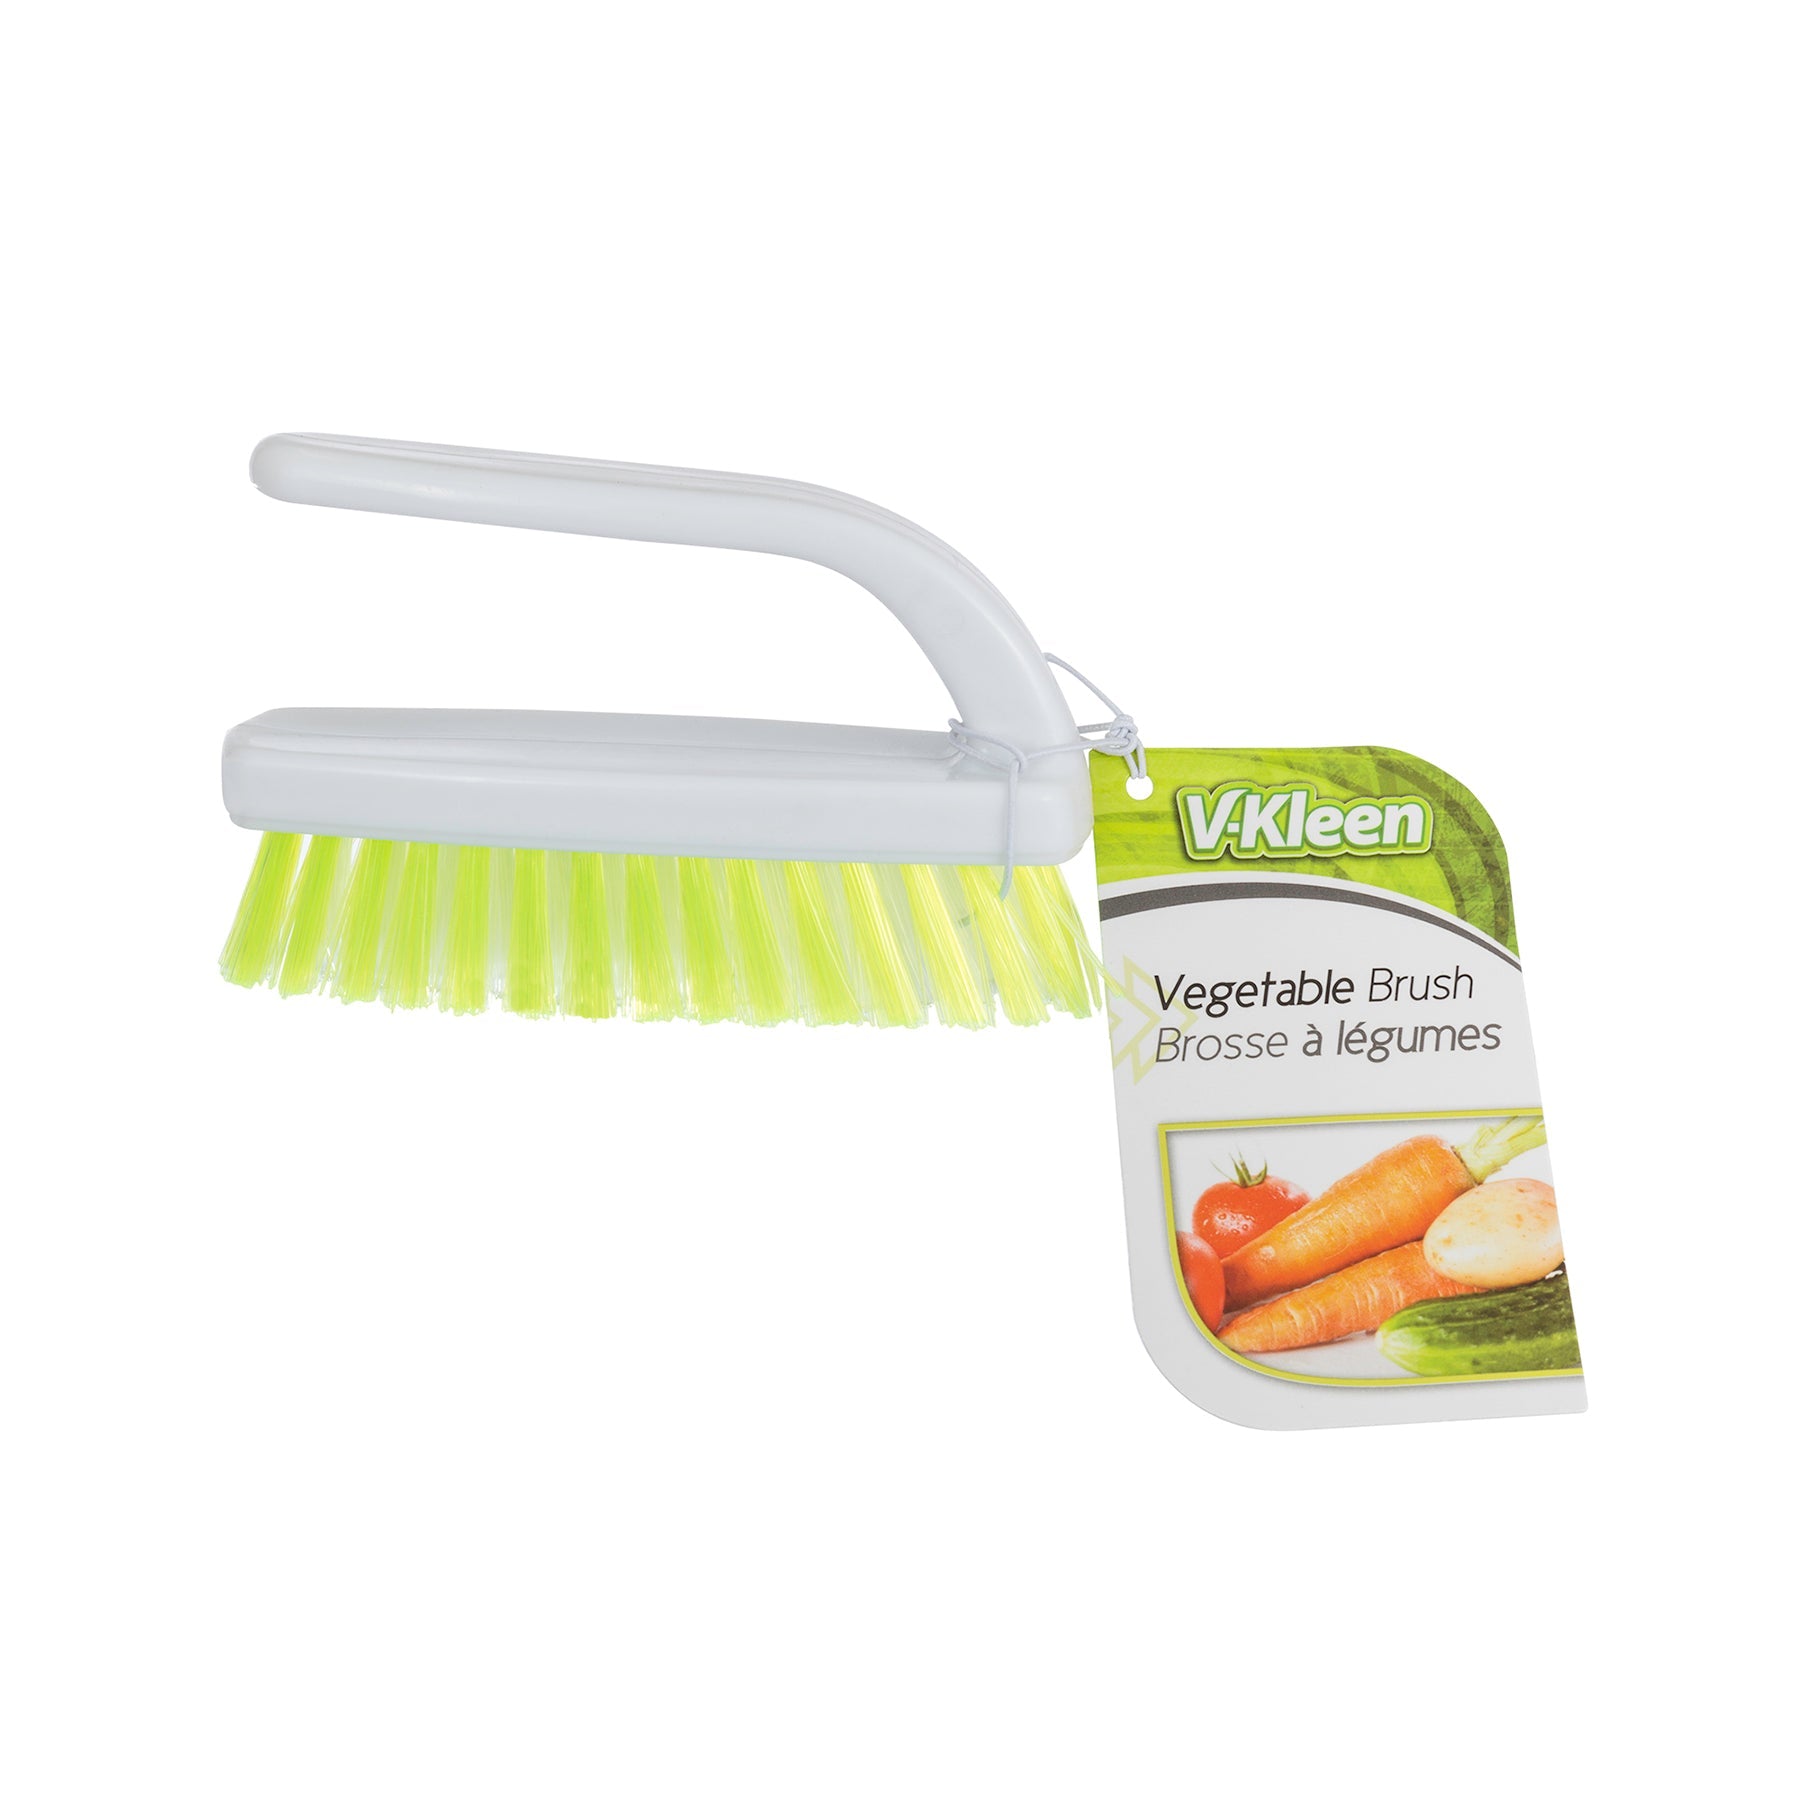 V-Kleen Vegetable Brush 4x1.25in